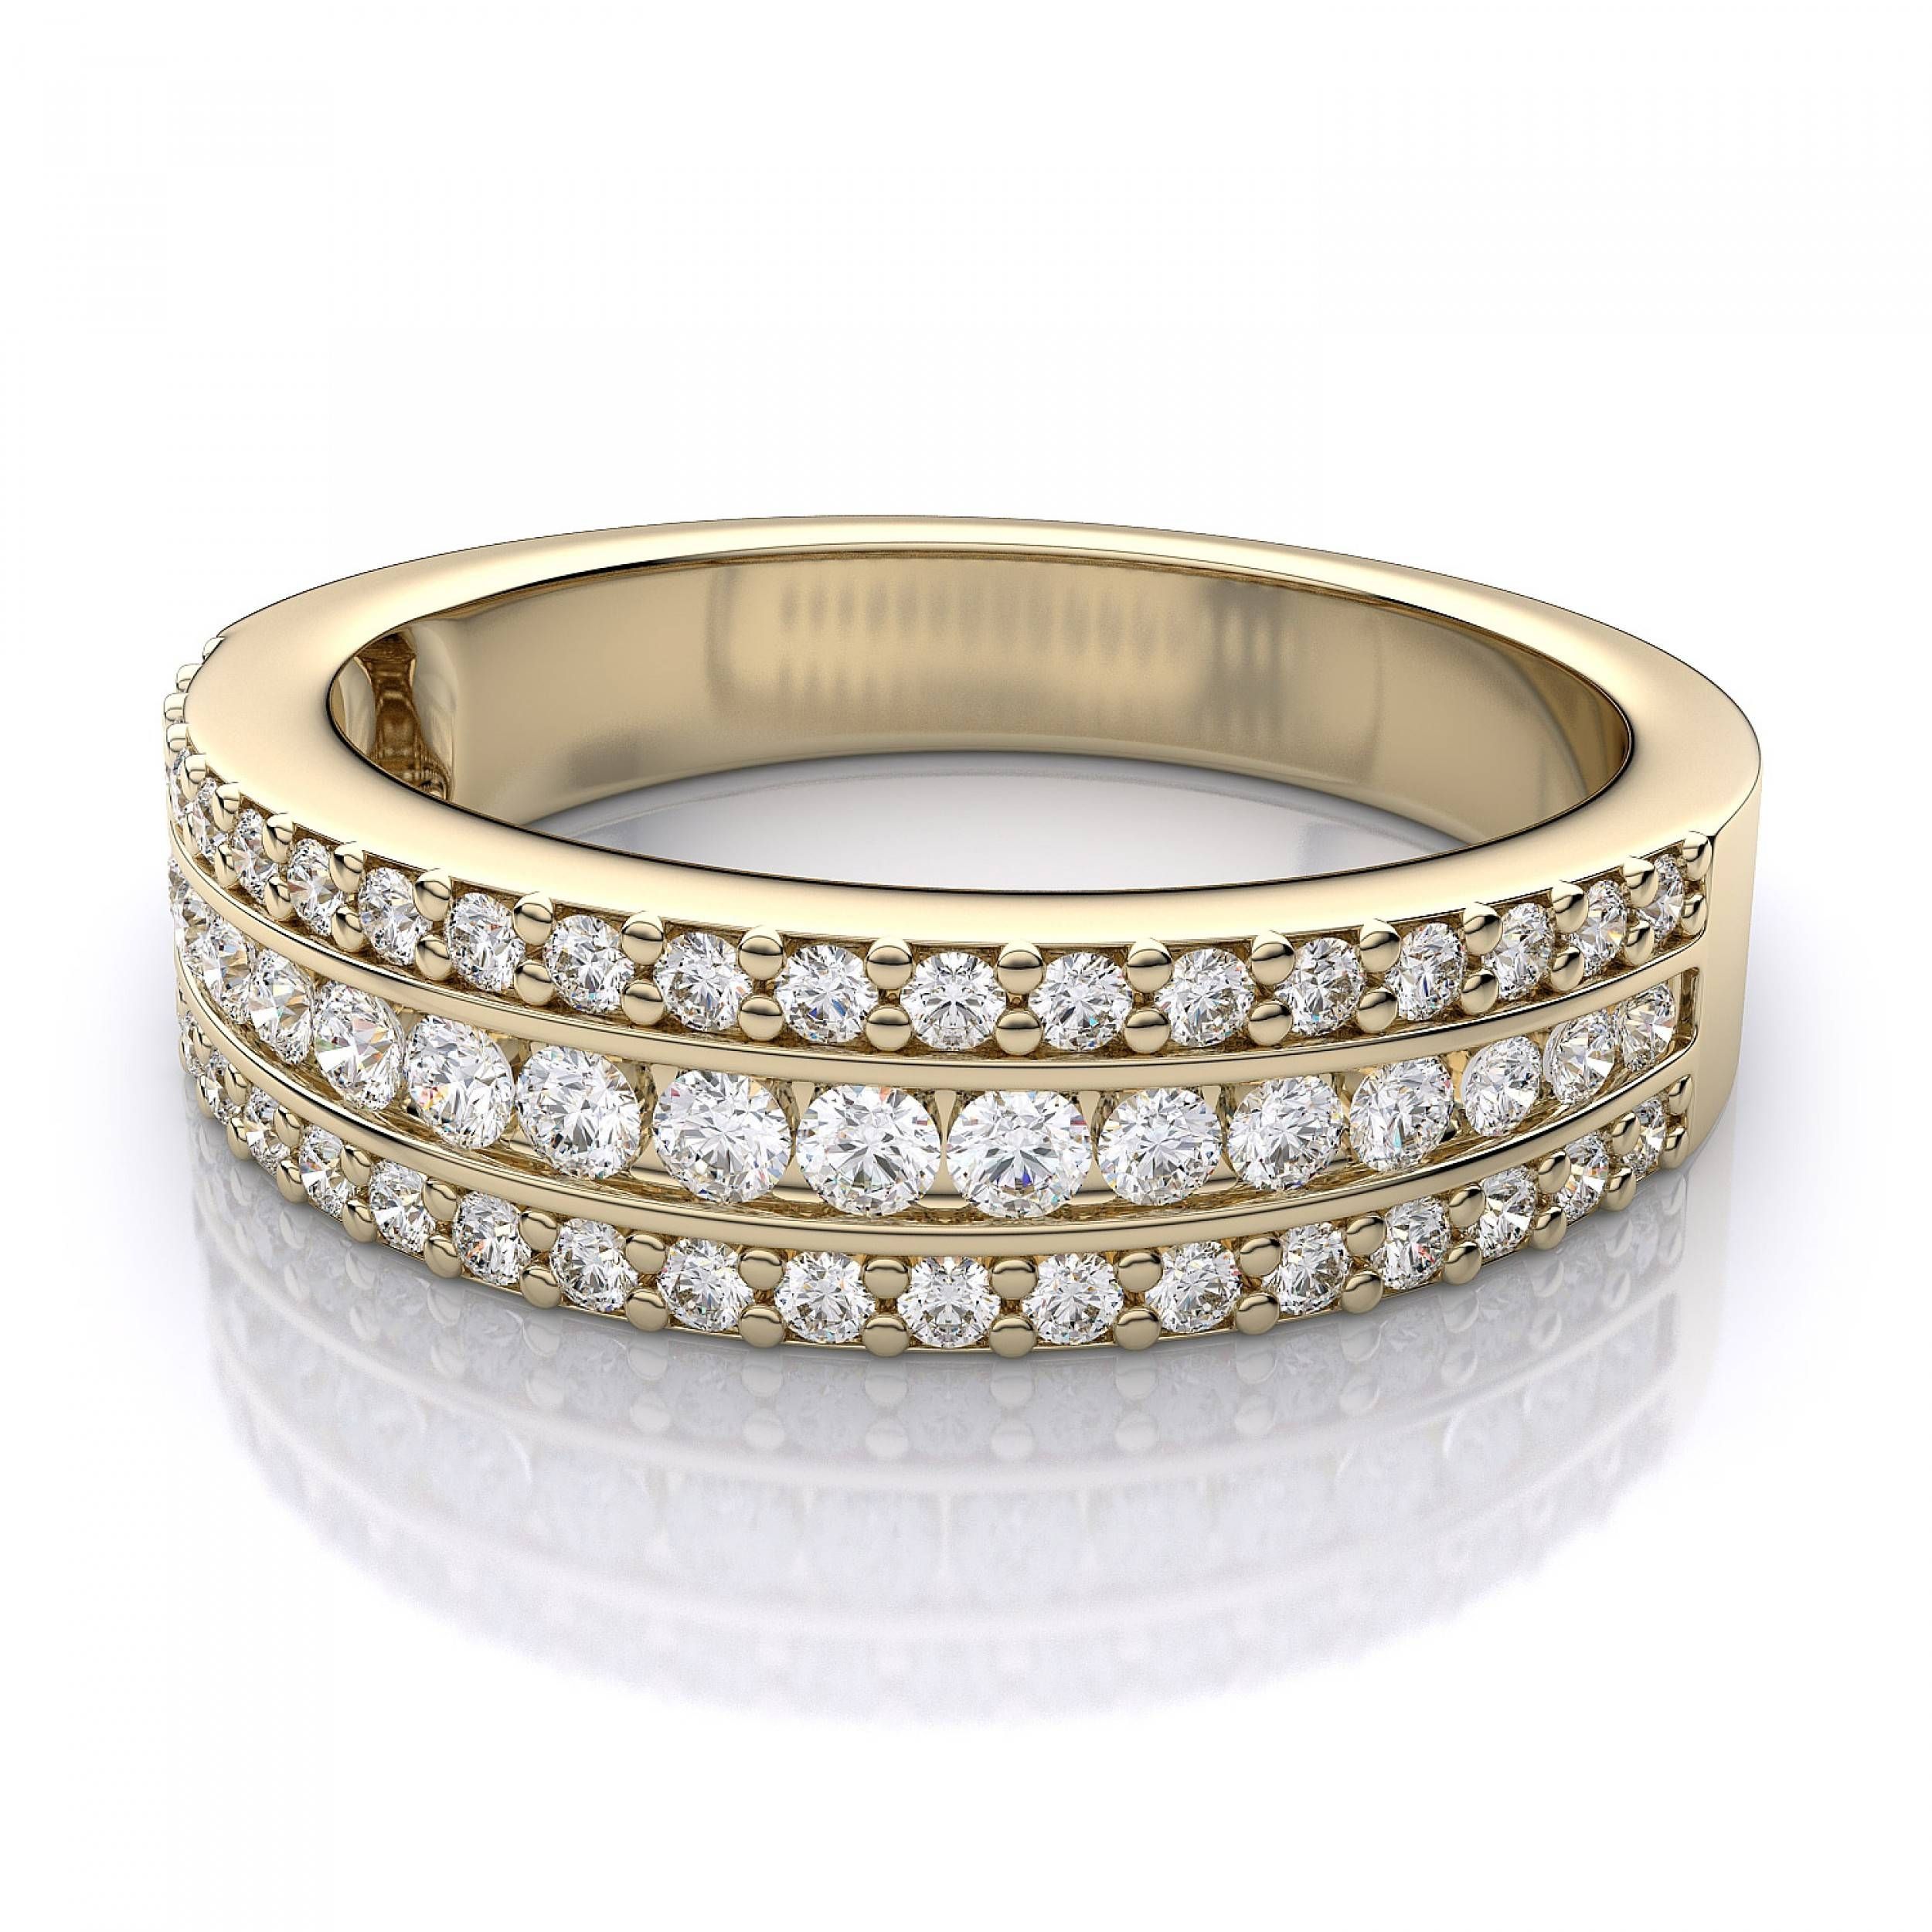 Wedding Rings : 3 Stone Diamond Anniversary Rings Twisted Regarding Latest 3 Carat Diamond Anniversary Rings (View 12 of 25)